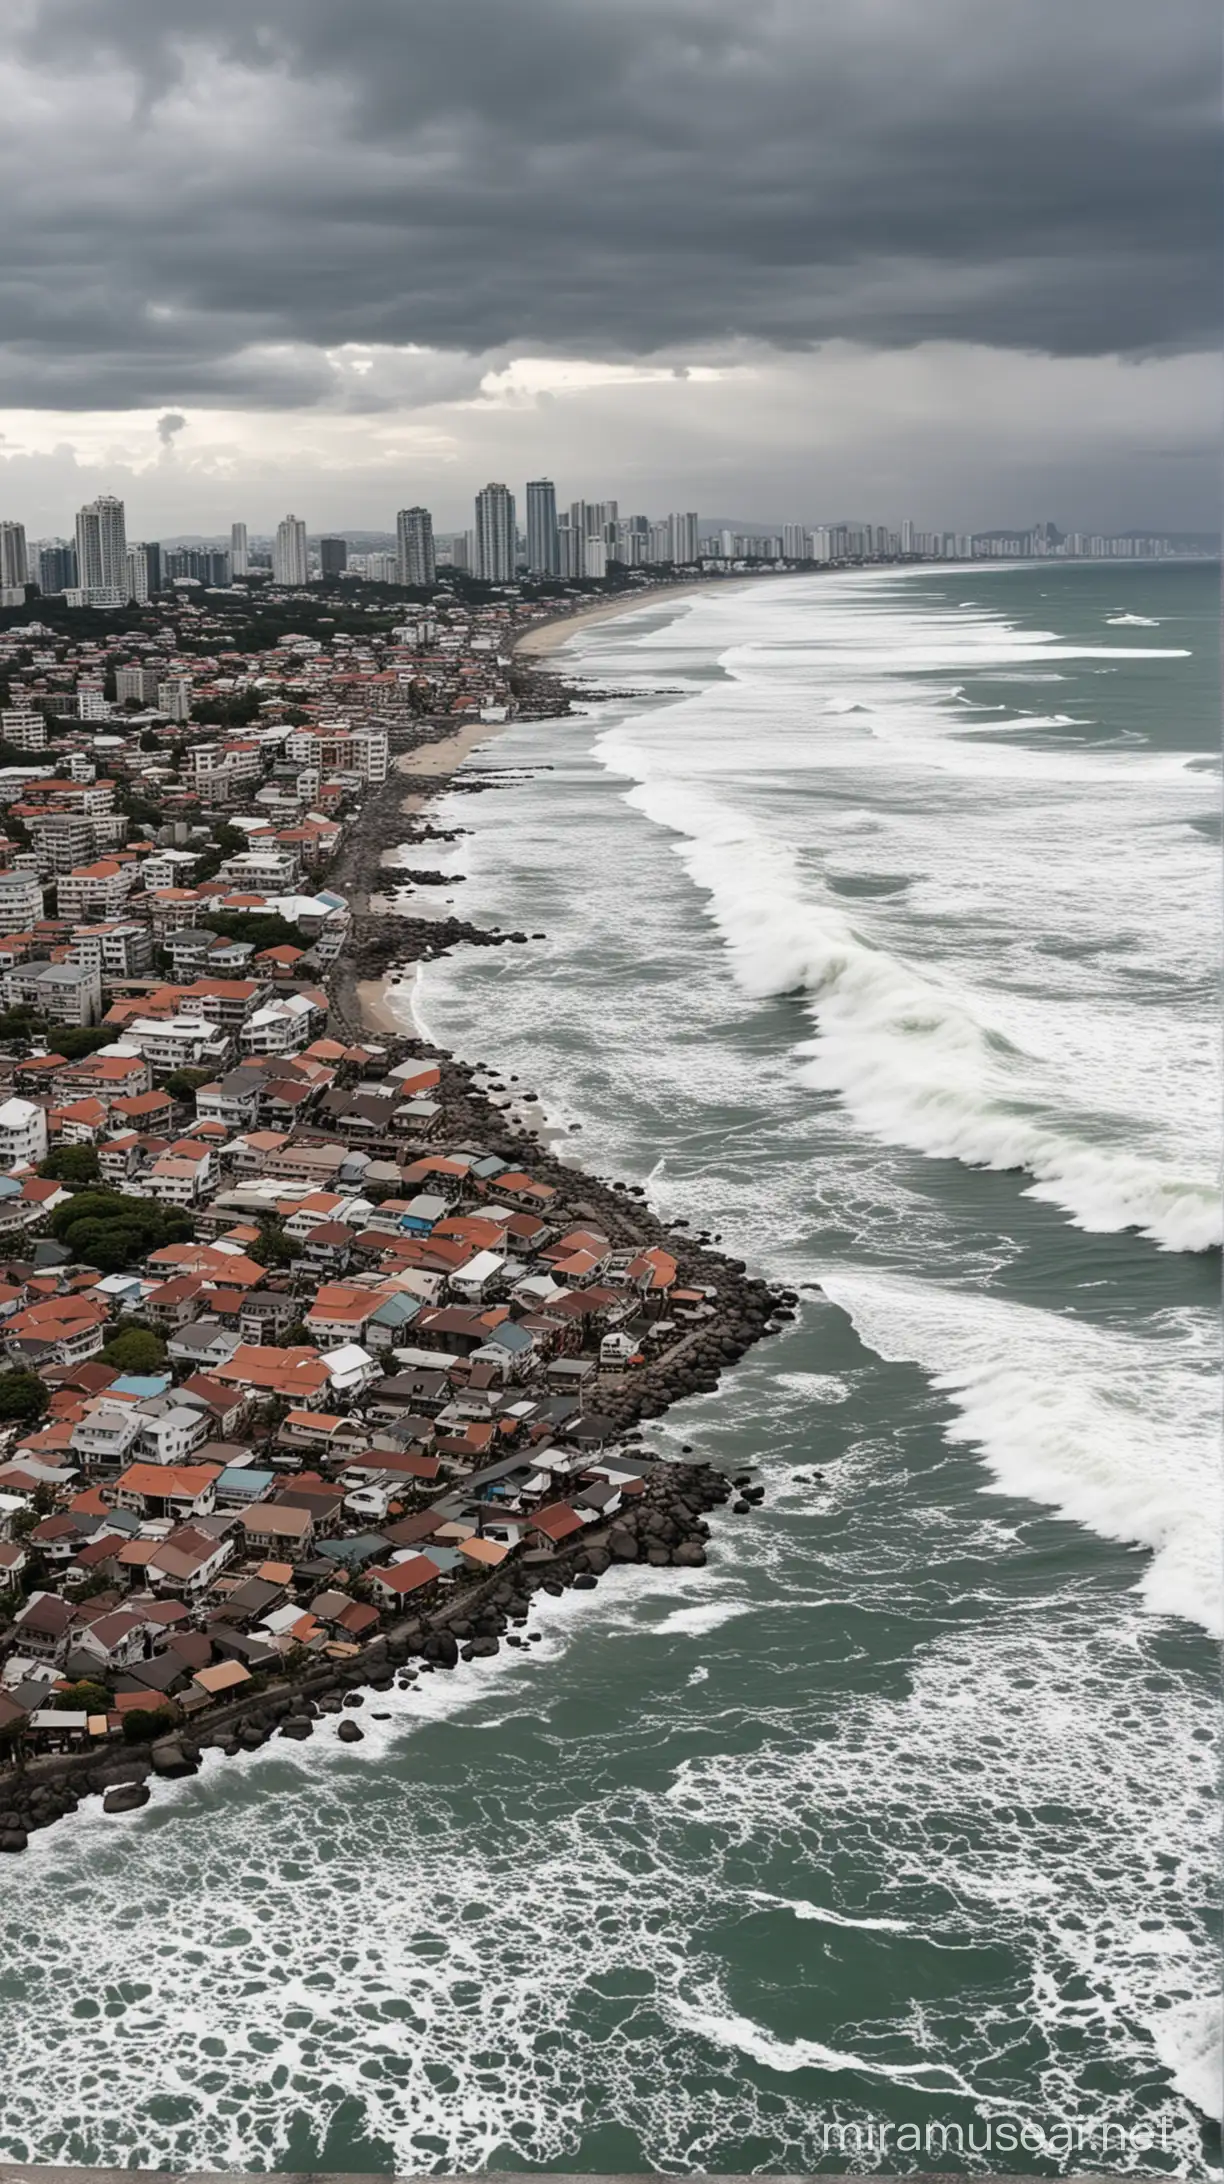 The tsunami came from the coast, towards the city